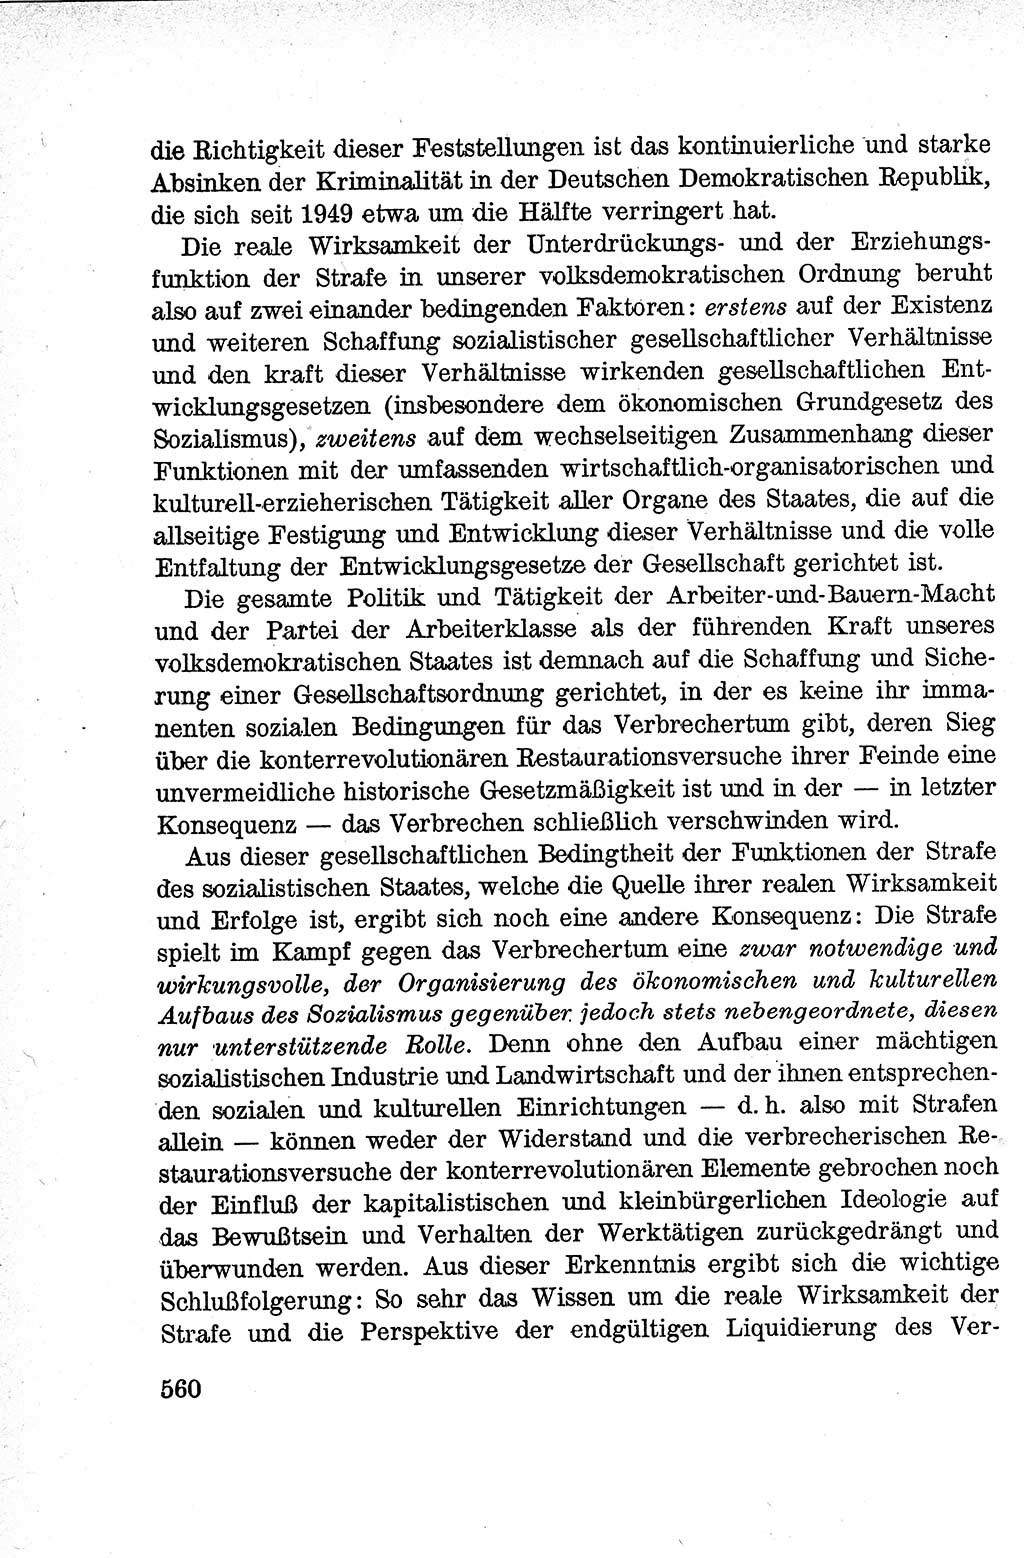 Lehrbuch des Strafrechts der Deutschen Demokratischen Republik (DDR), Allgemeiner Teil 1959, Seite 560 (Lb. Strafr. DDR AT 1959, S. 560)